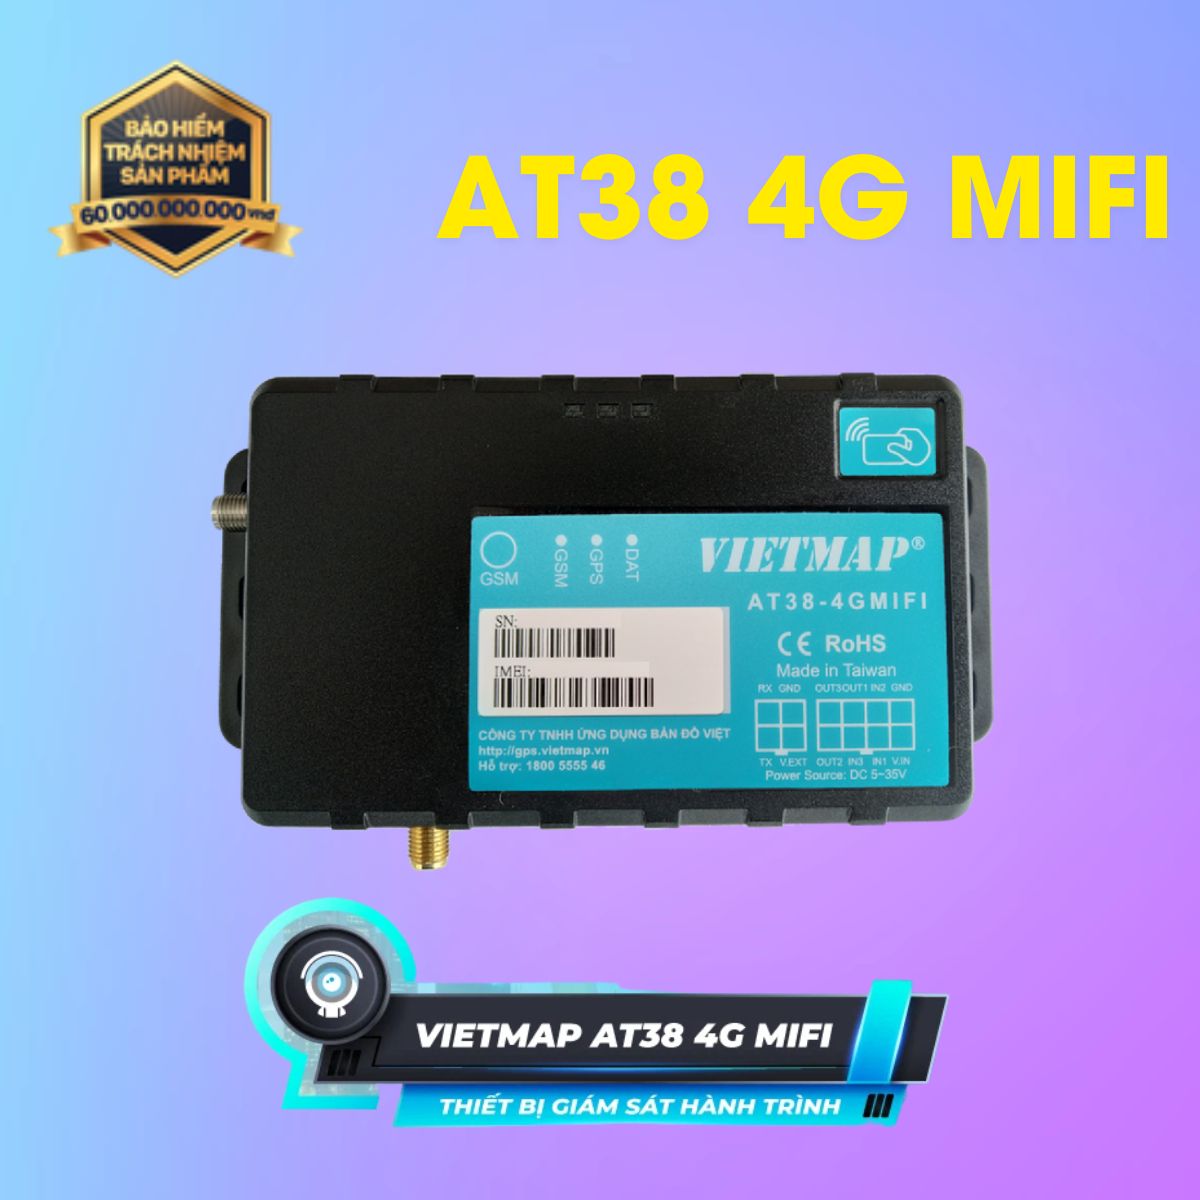 Thiết bị giám sát hành trình Vietmap AT38 4G MIFI gắn thêm cảm biến xăng dầu, cảm biến nhiệt, cảm biến mở cửa, phát wifi